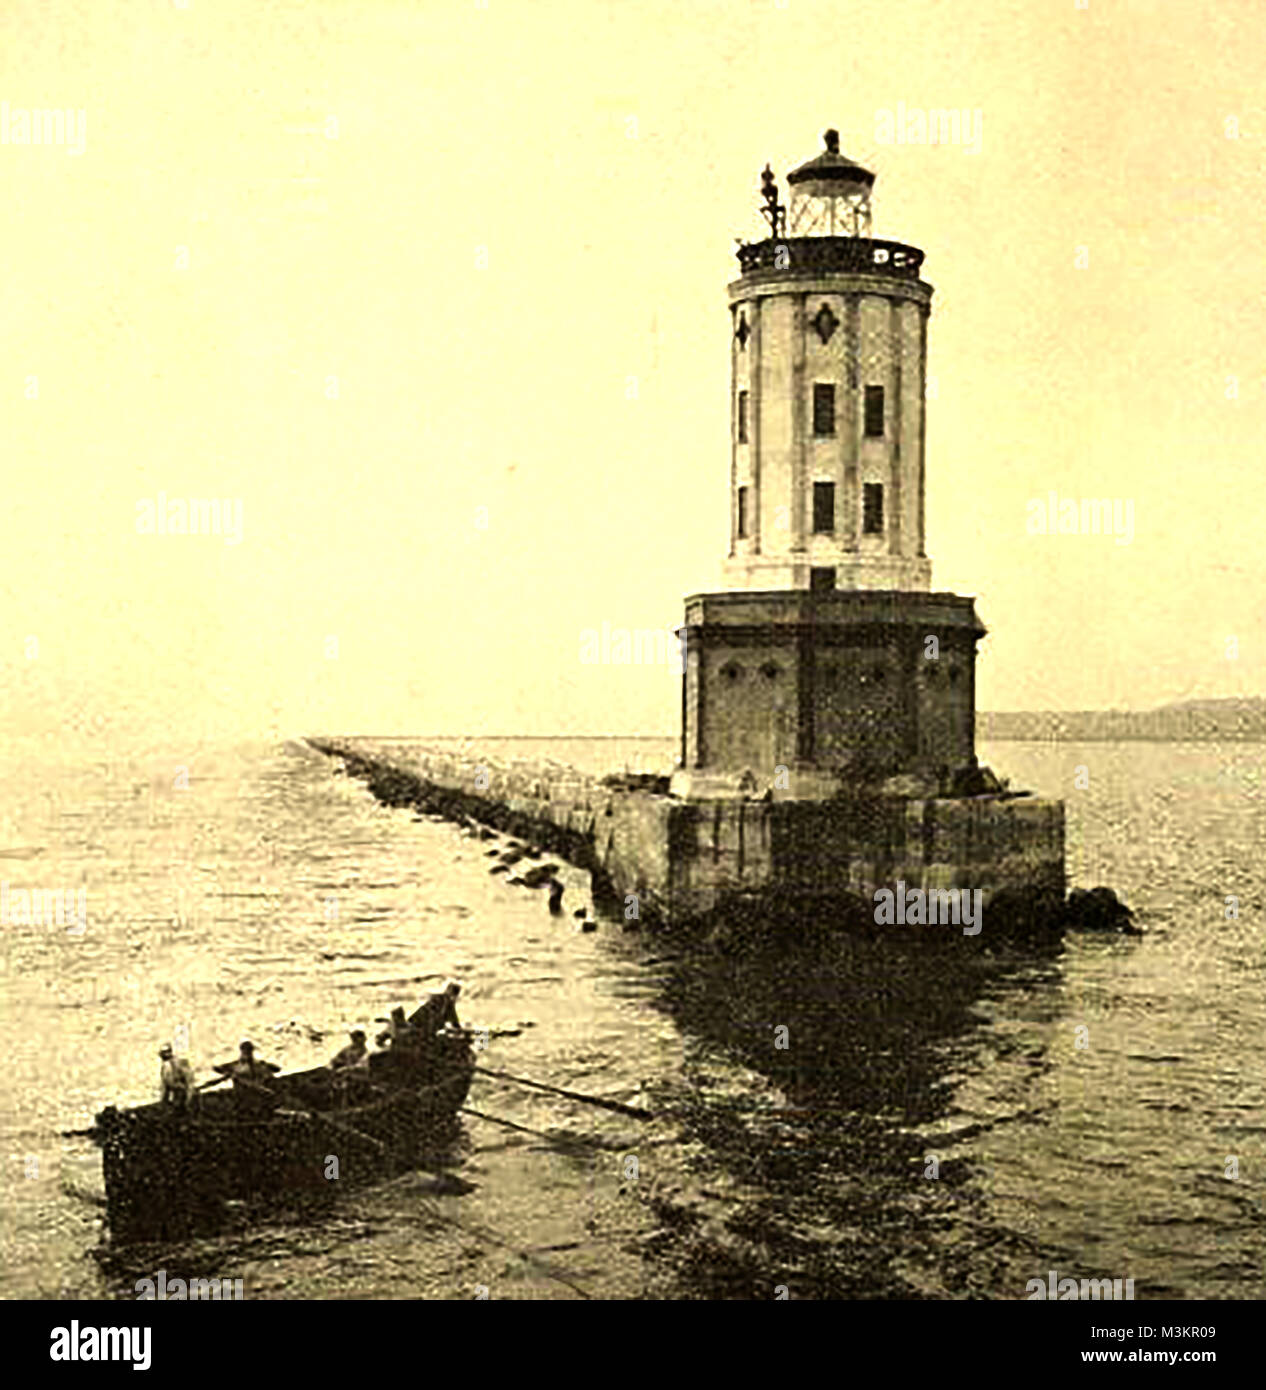 Alte amerikanische Leuchttürme, Licht Stationen und Navigationshilfen - Los Angeles Harbor Leuchtturm/light Station, Kalifornien, USA 1923 Stockfoto